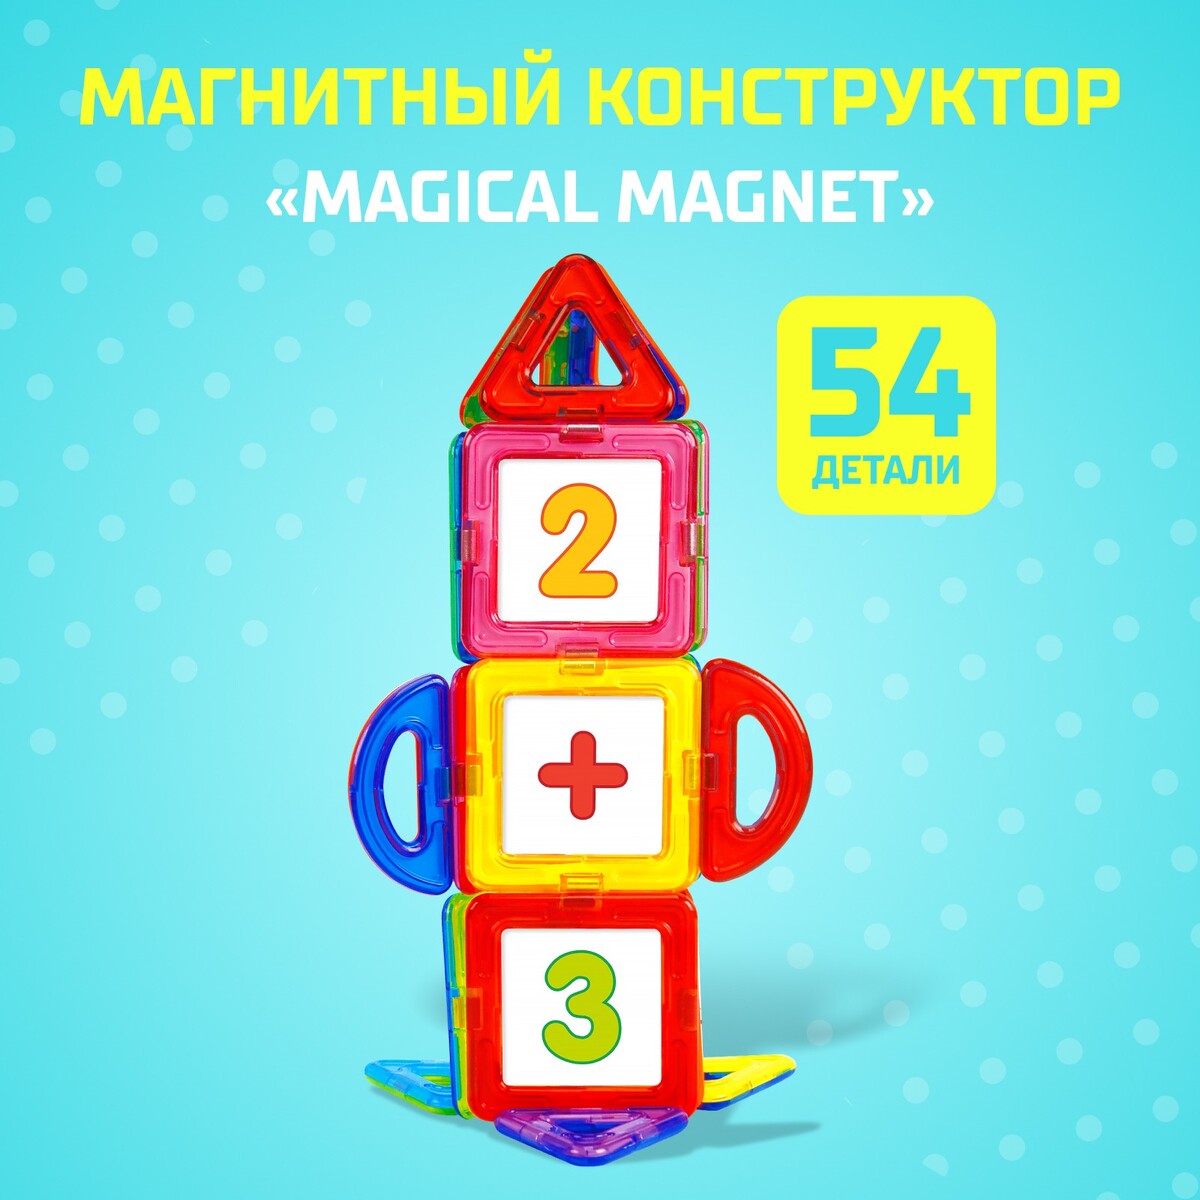 Магнитный конструктор magical magnet, 54 детали, детали матовые конструктор магнитный 62 детали